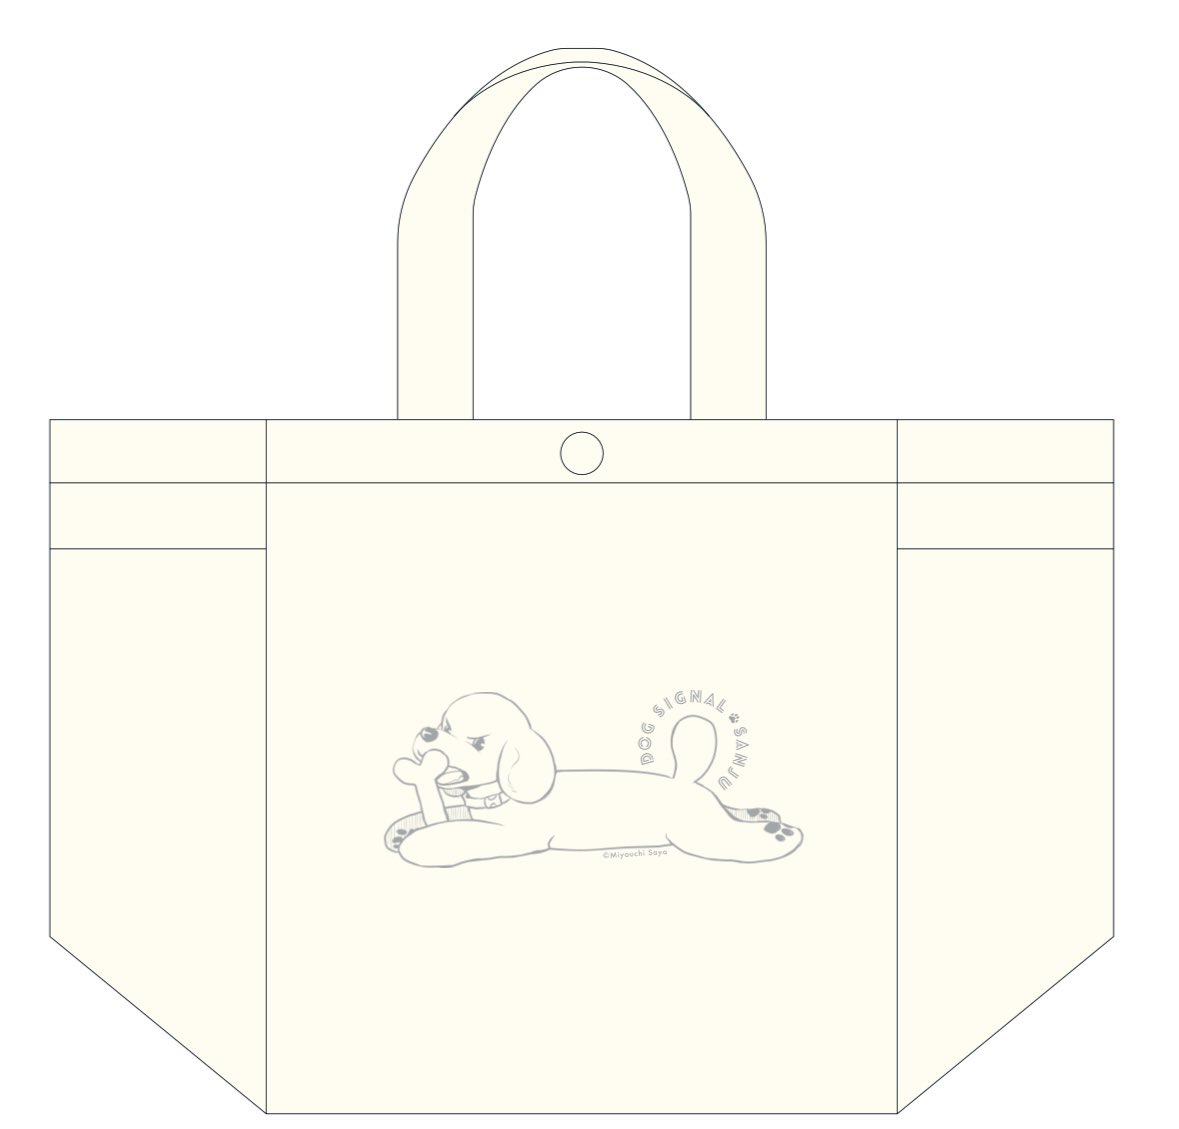 ⚠️〆切迫る⚠️  11巻特装版の〆切は金曜日まで🐶  超かわいいサンジュのイラスト入りのバッグ付きの特装版です。(画像は製作中のものです)  ぜひご注文をよろしくお願いします🙇  #ドッグシグナル #DOGSIGNAL #うちのこシグナル